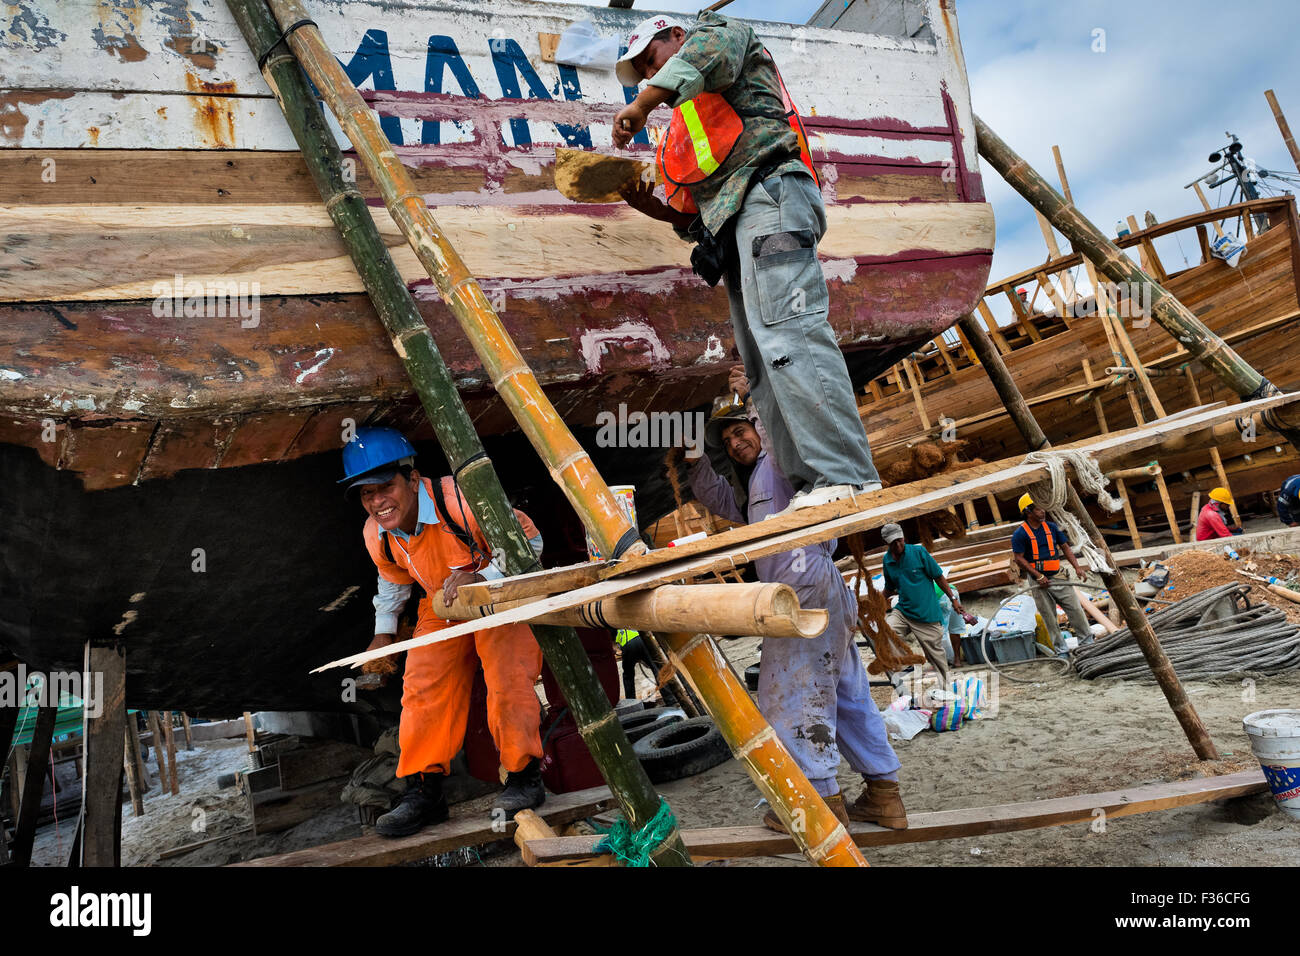 Calfeutrez les travailleurs équatoriens un bateau de pêche en bois traditionnel dans un chantier naval artisanal sur la plage de Manta, en Equateur. Banque D'Images